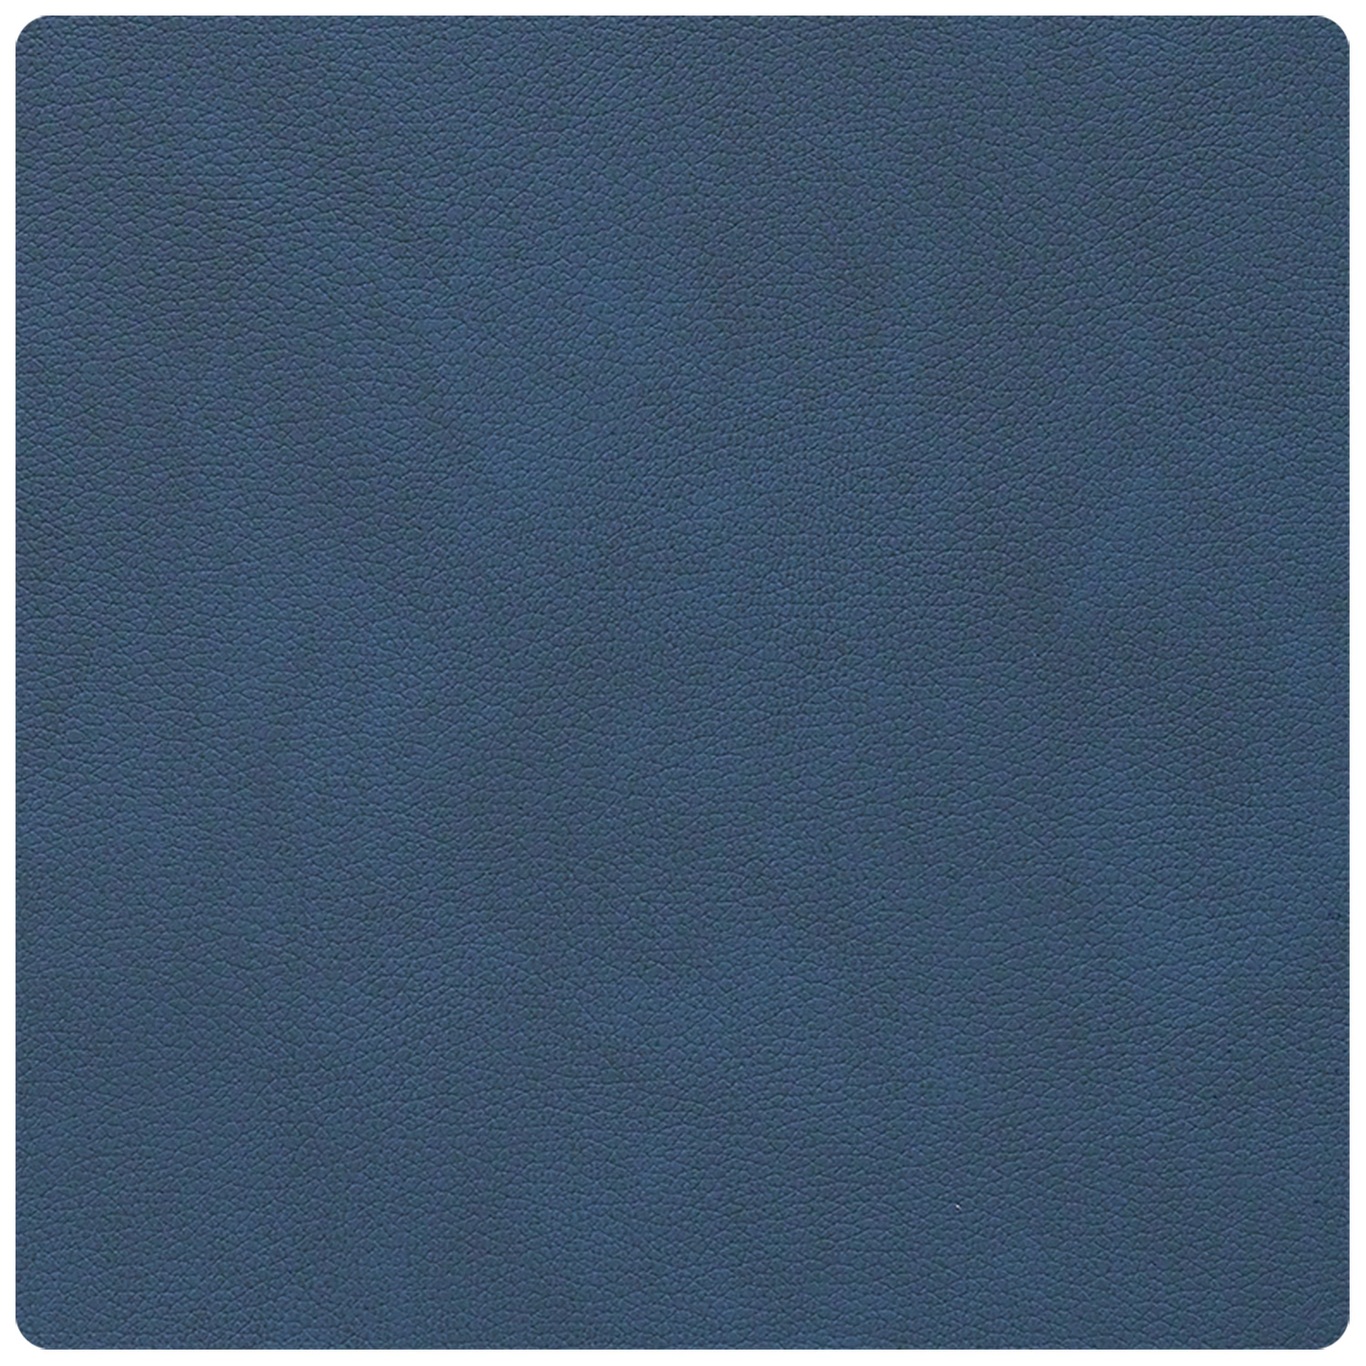 Square Lasinalunen Nupo 10x10 cm, Midnight Blue